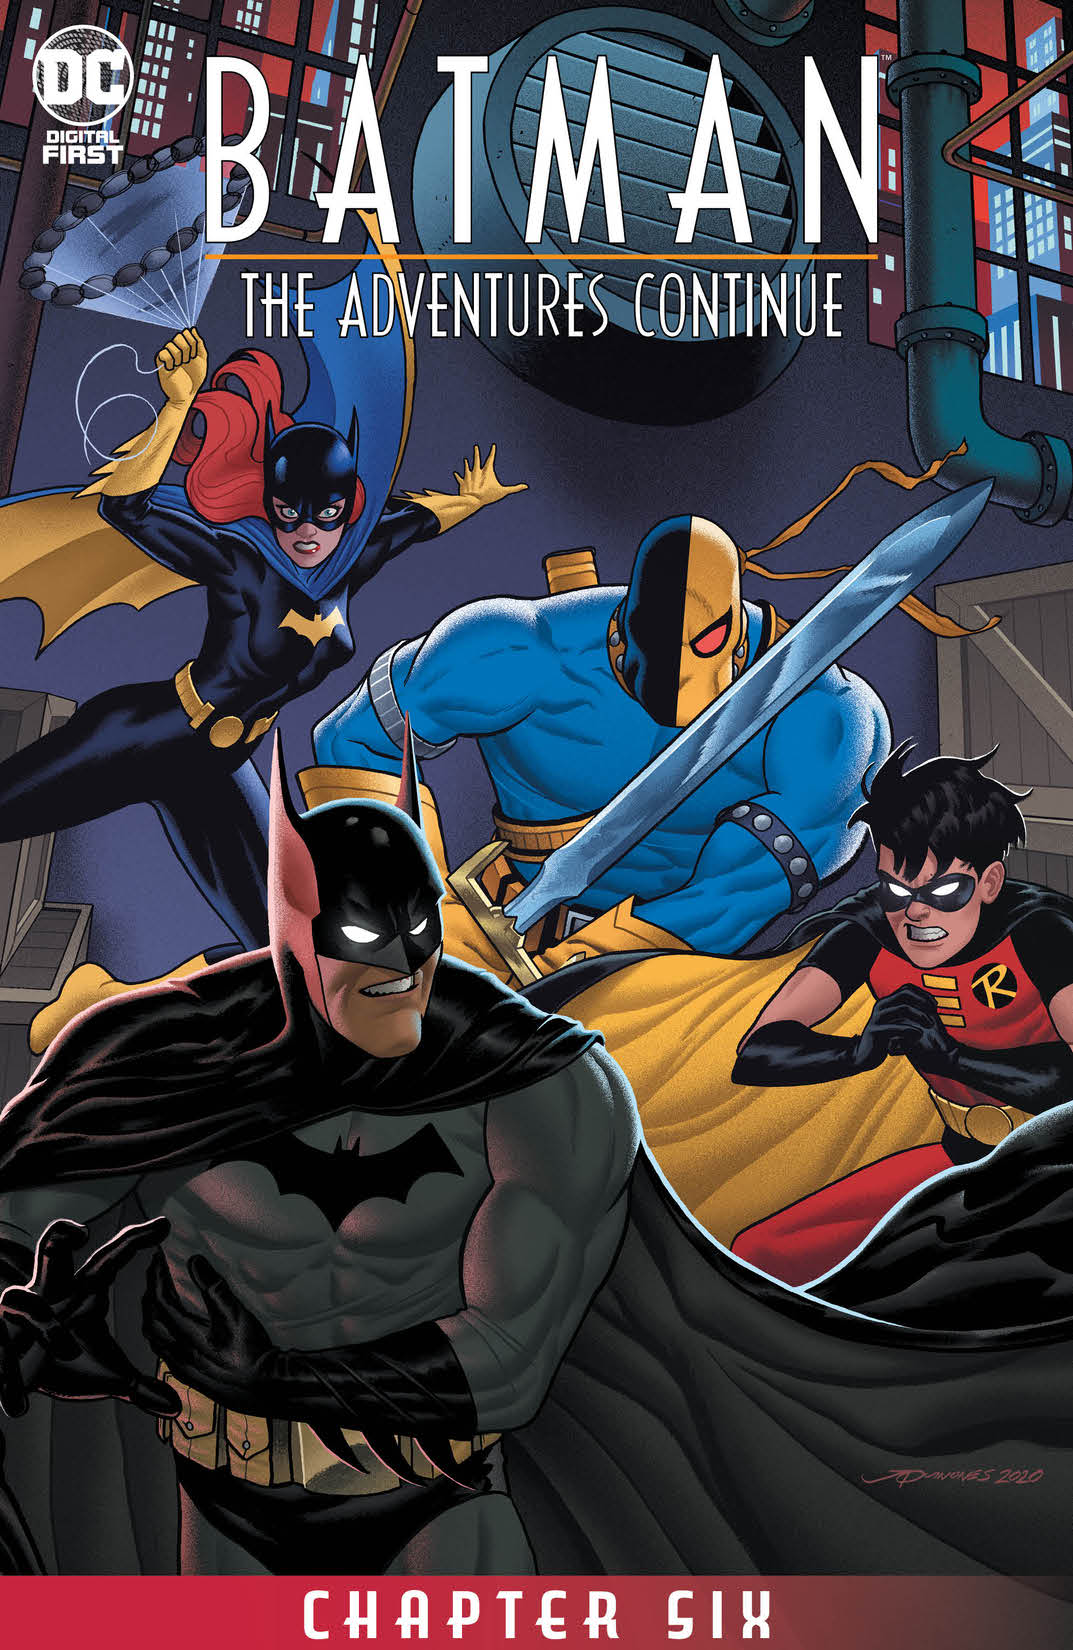 Batman: The Adventures Continue #6 preview images